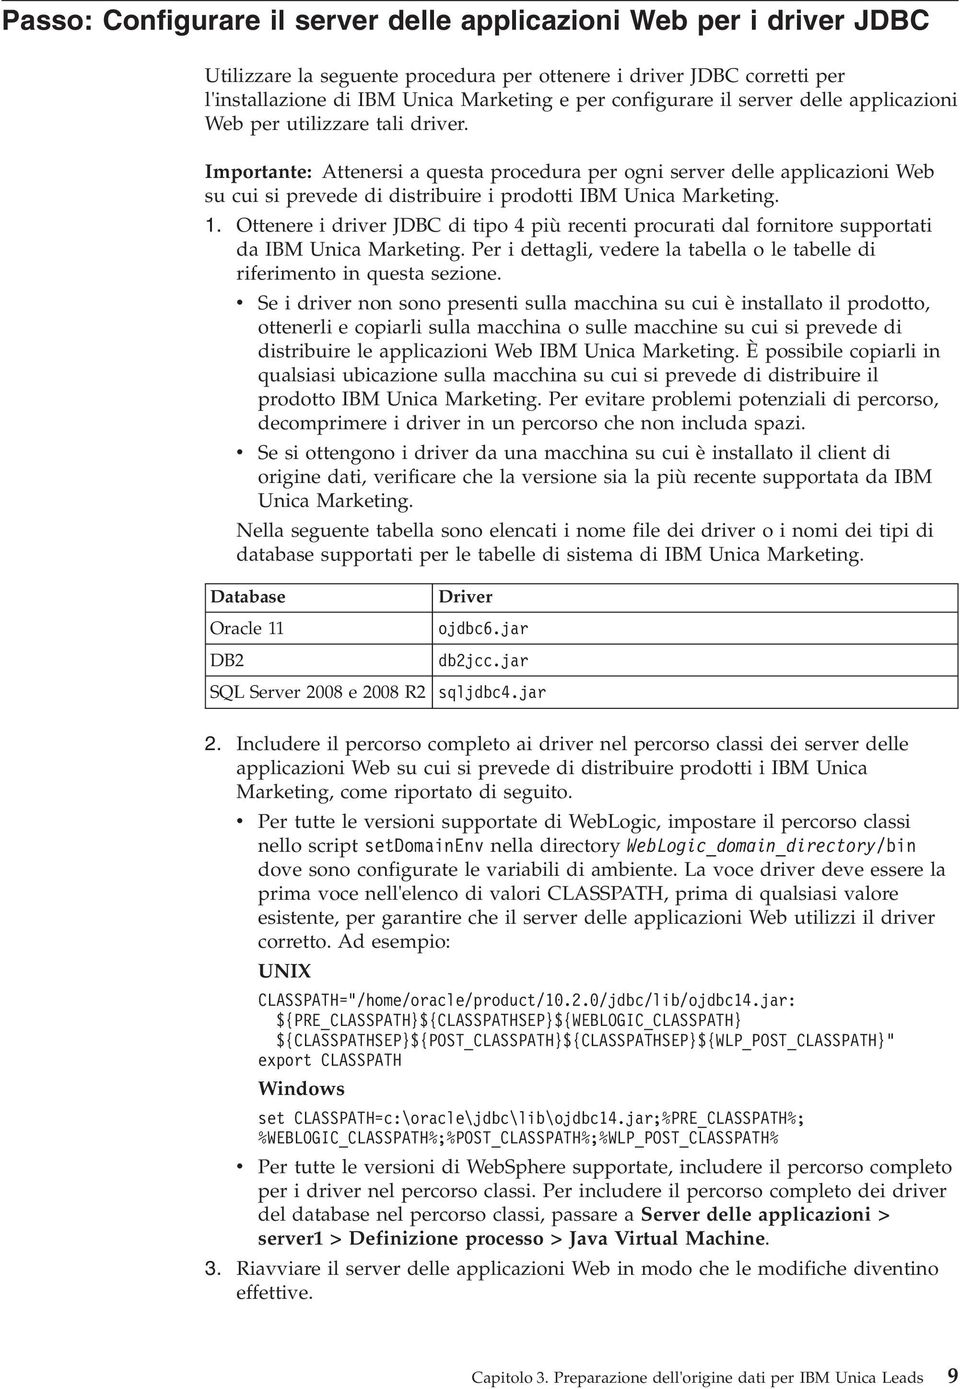 1. Ottenere i drier JDBC di tipo 4 più recenti procurati dal fornitore supportati da IBM Unica Marketing. Per i dettagli, edere la tabella o le tabelle di riferimento in questa sezione.